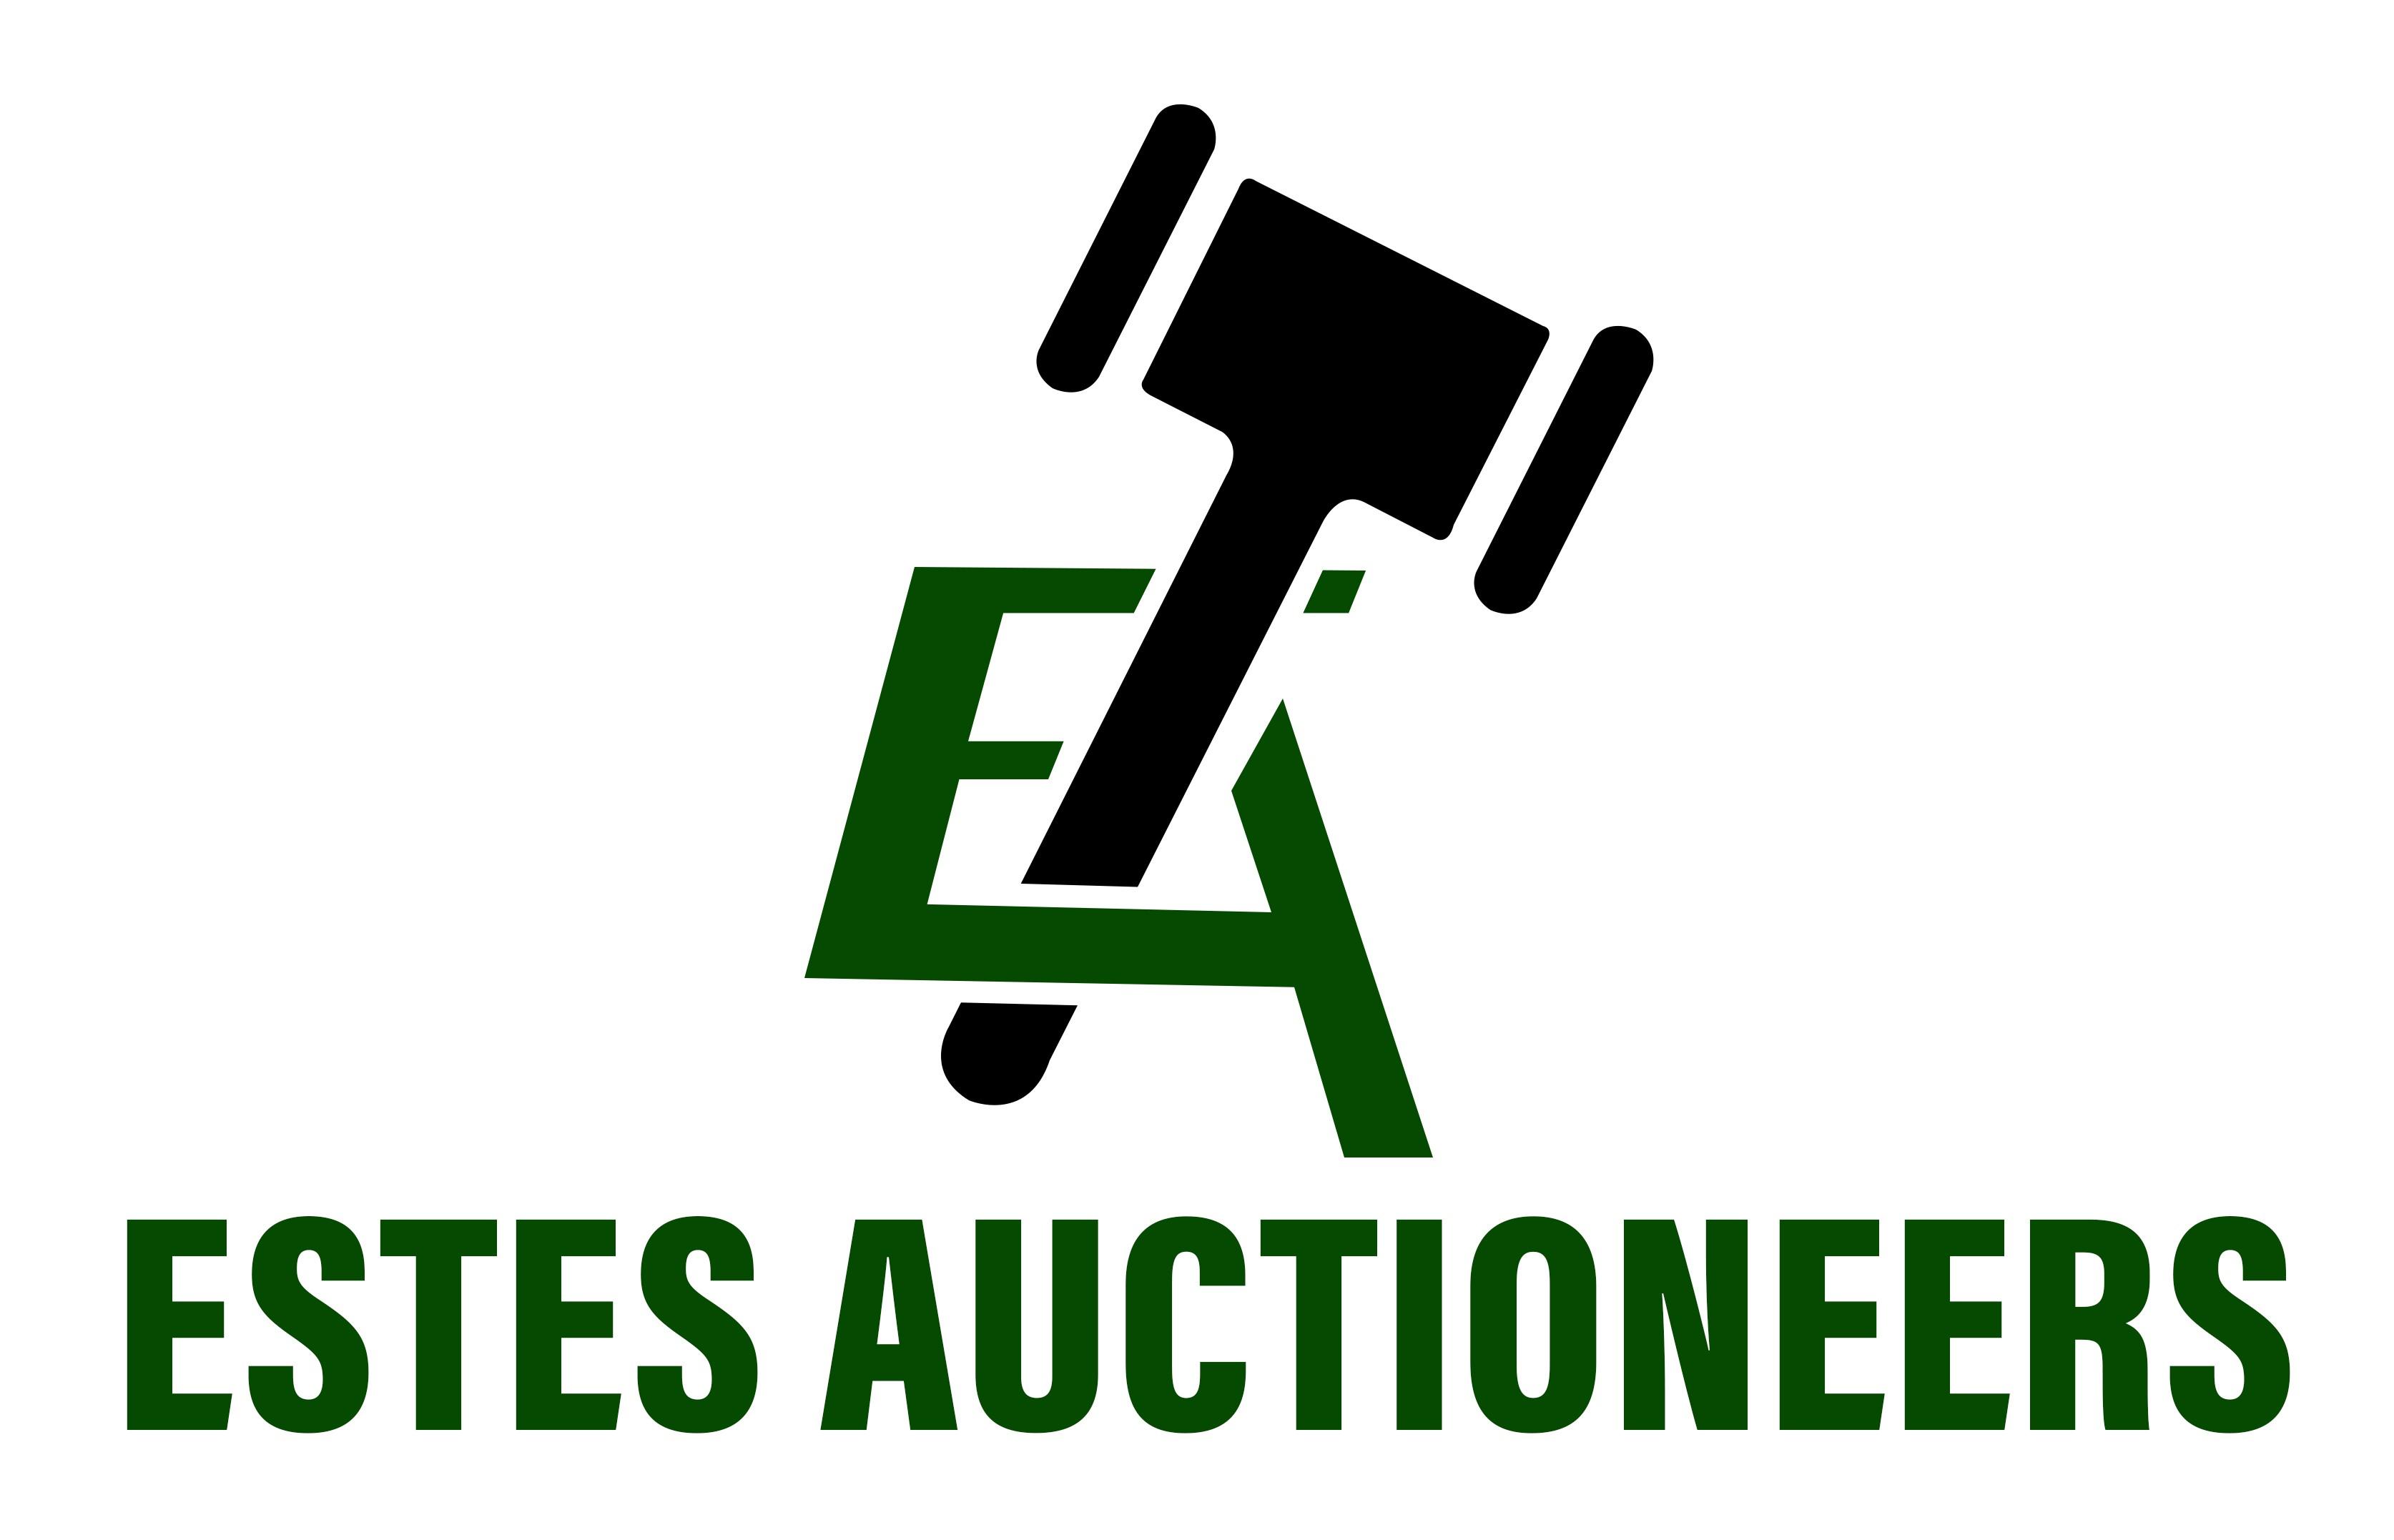 Estes Auctioneers LLC